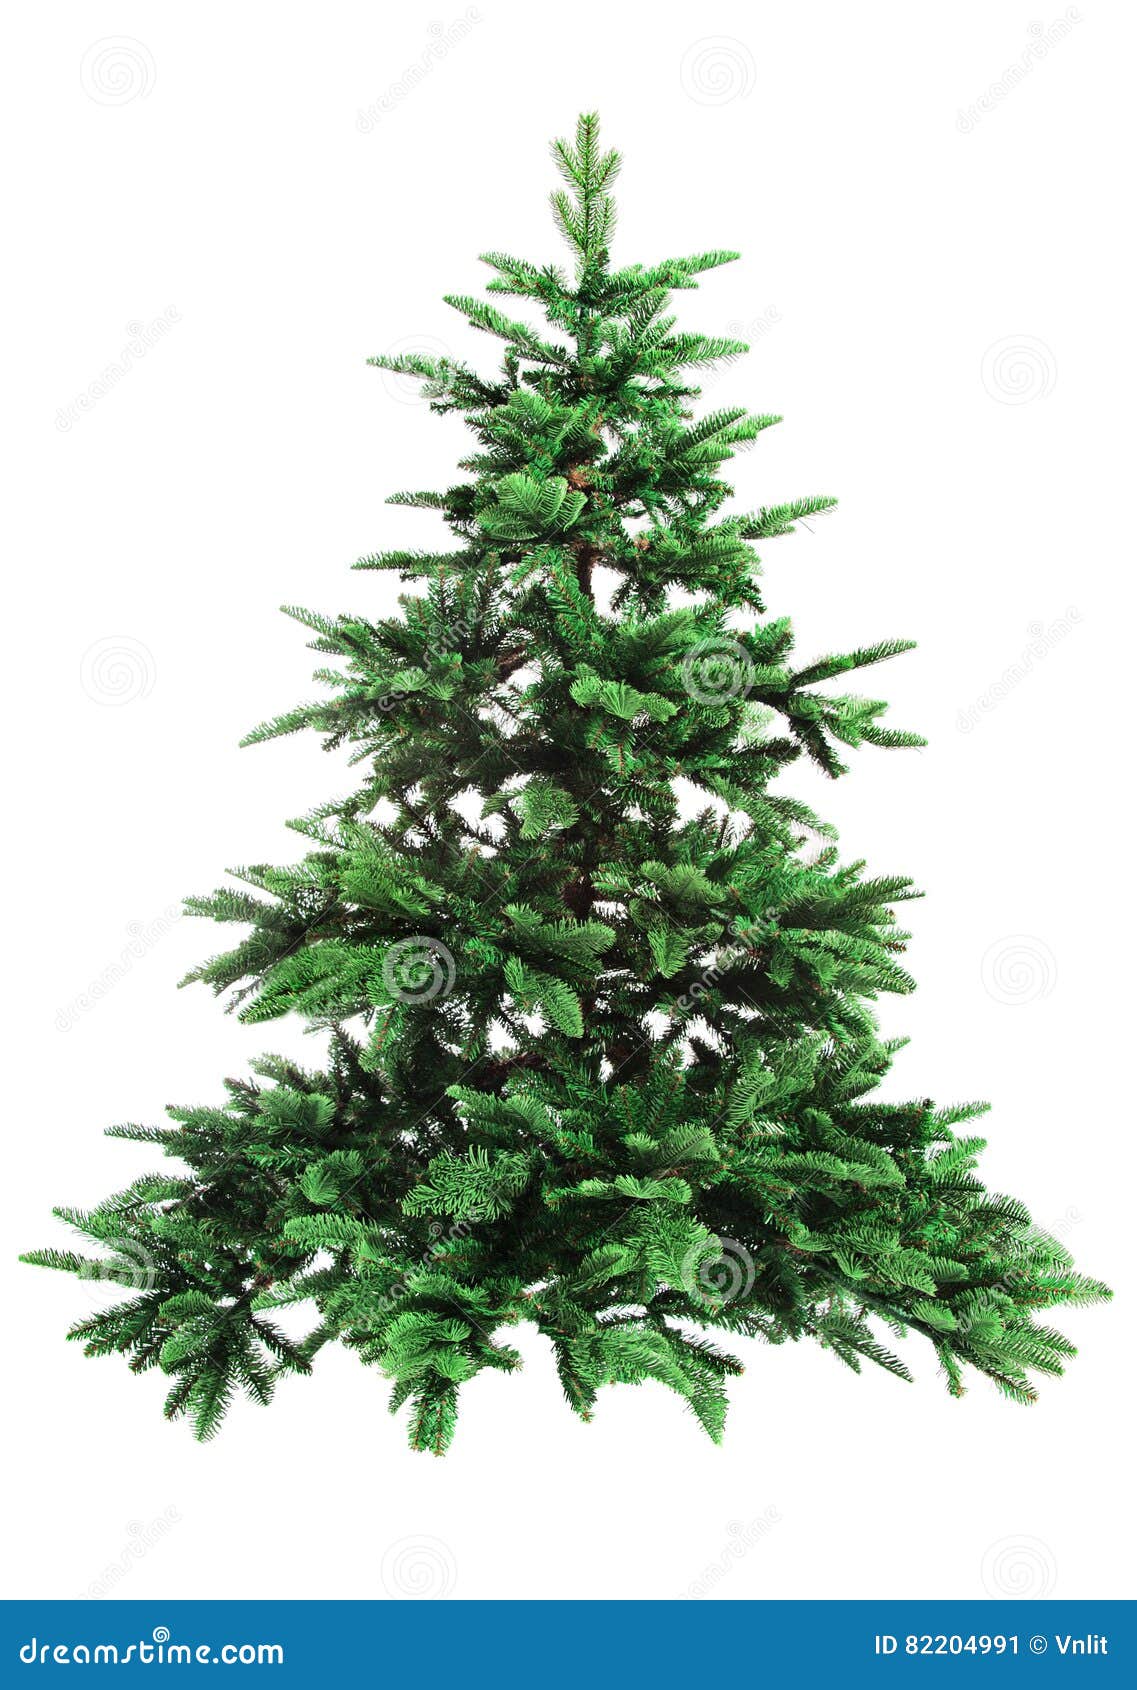 bare christmas tree